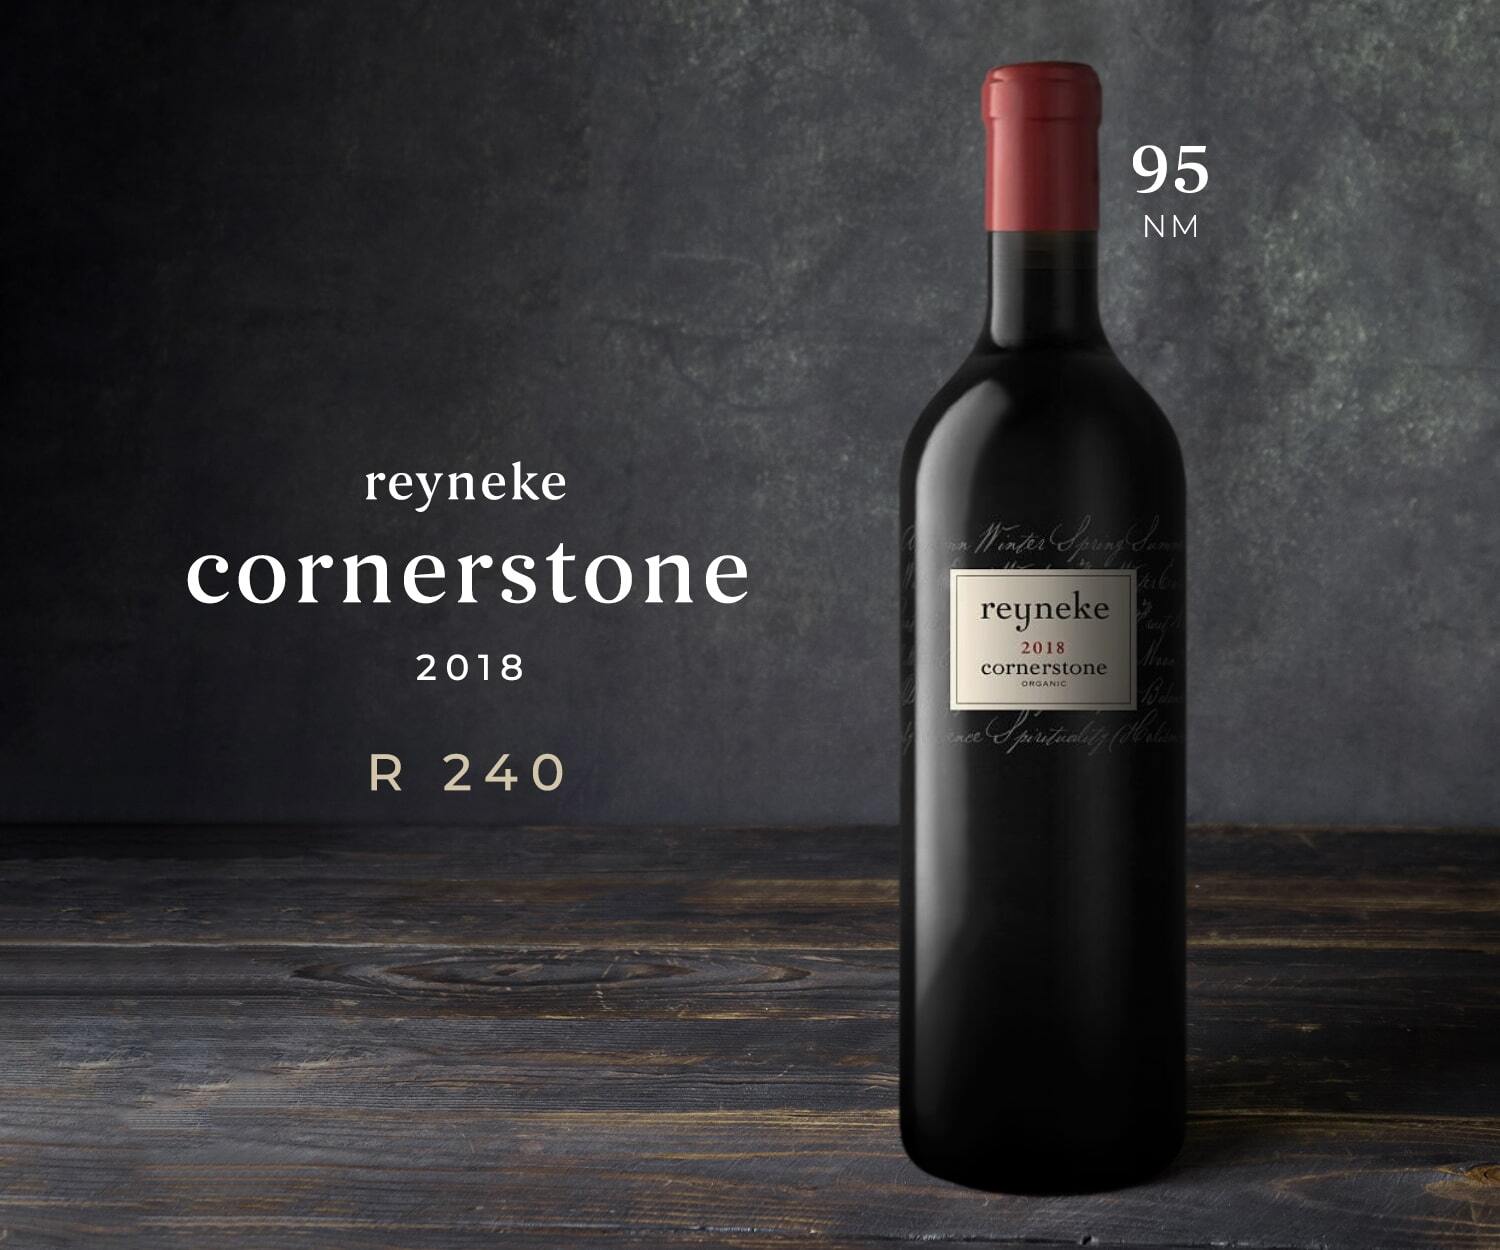 Reyneke Cornerstone 2018: Order now